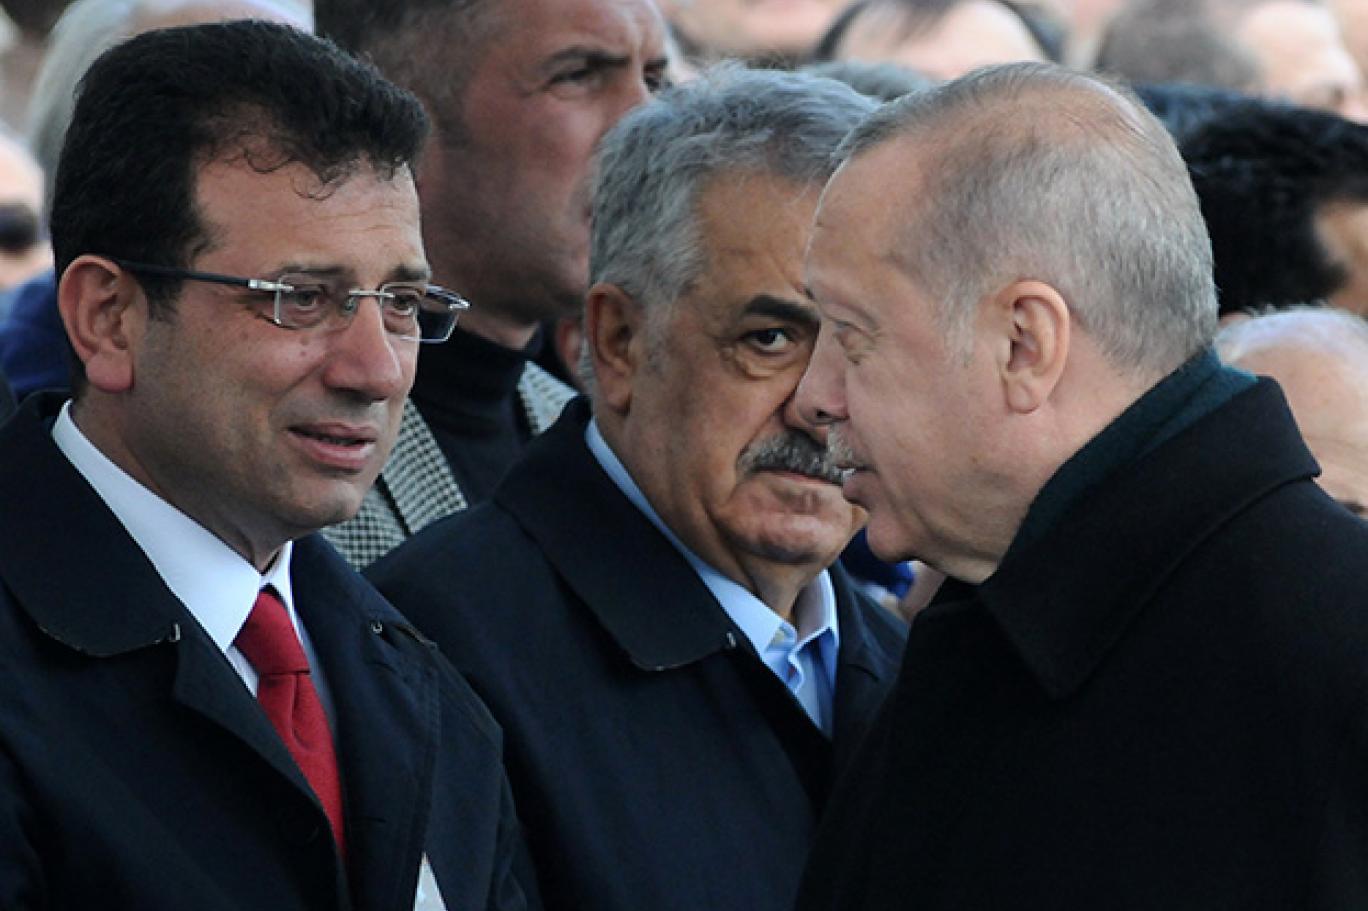 İmamoğlu Erdoğan’ın “Yeniden İstanbul” açıklamasına yanıt verdi